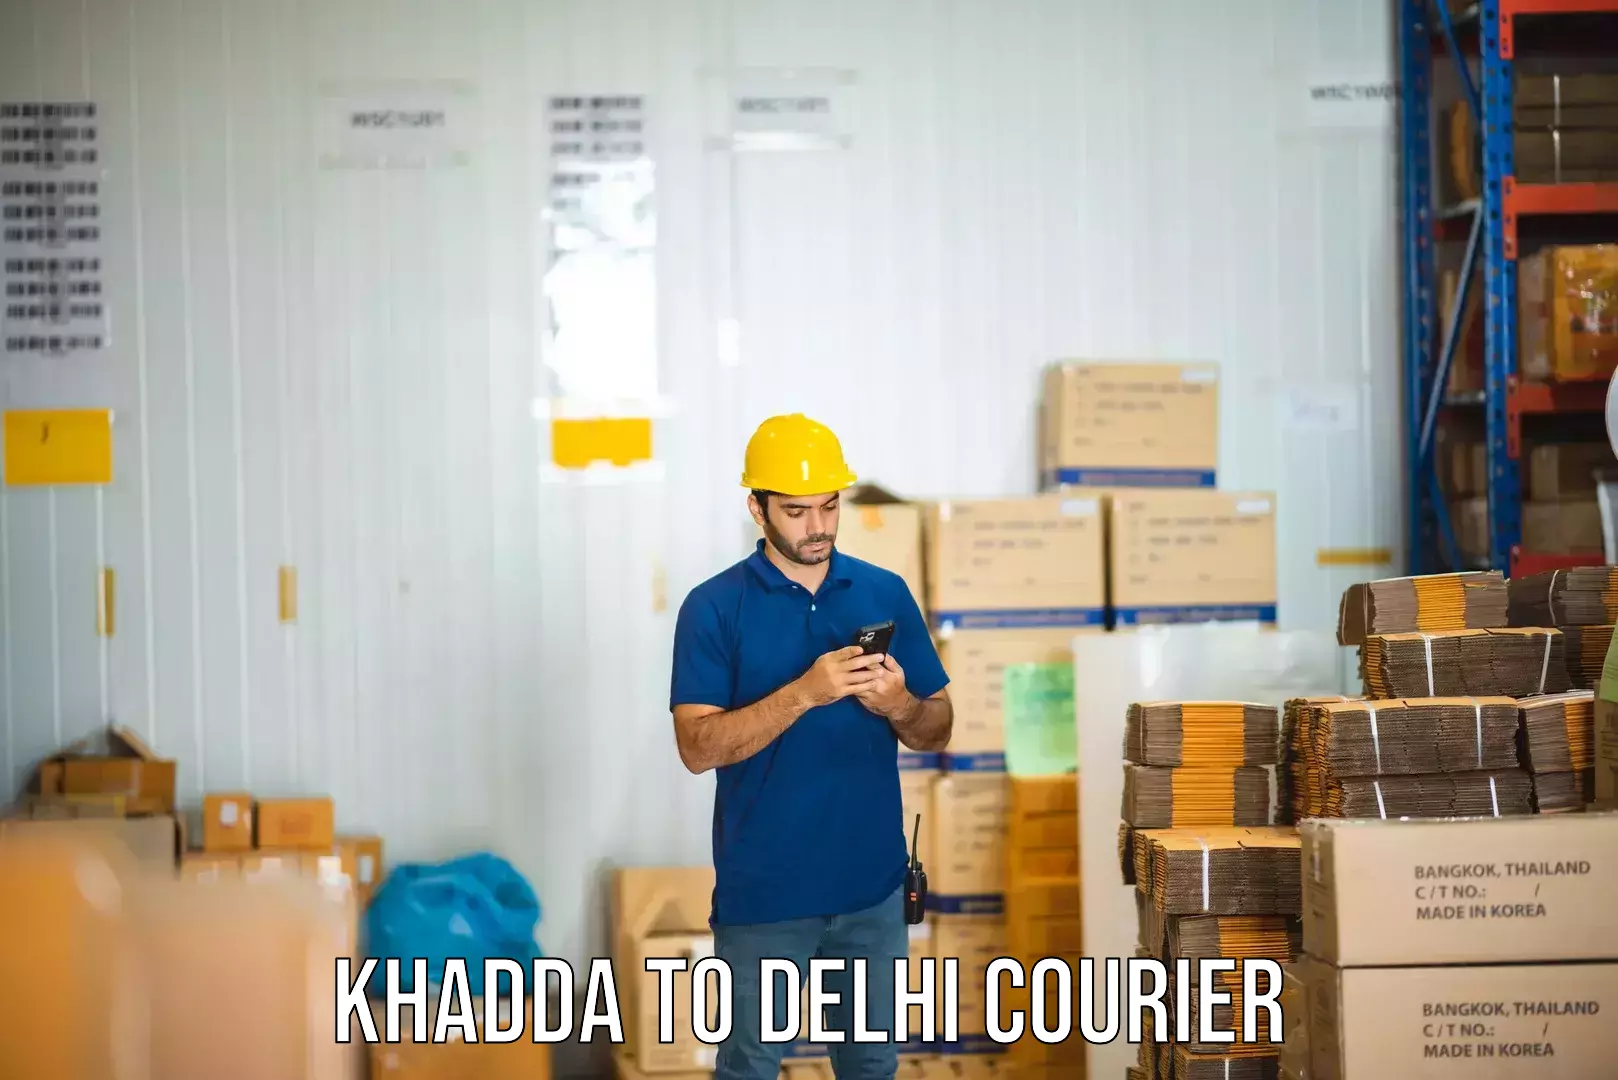 Express shipping Khadda to IIT Delhi